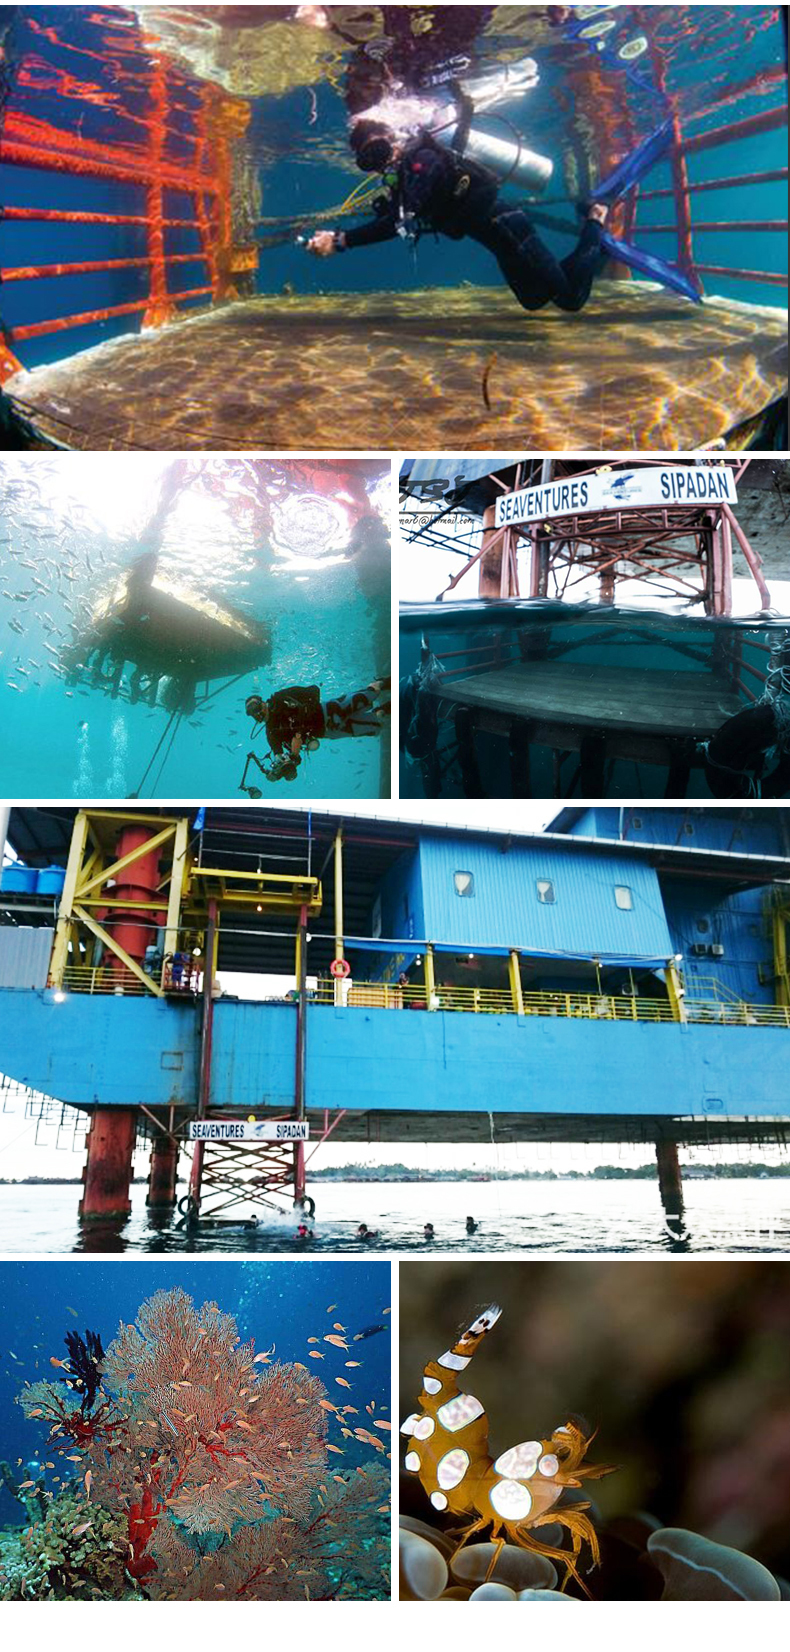 马布平台潜水度假村预定 Seaventures Rig 仙本那潜水诗巴丹岛 潜客